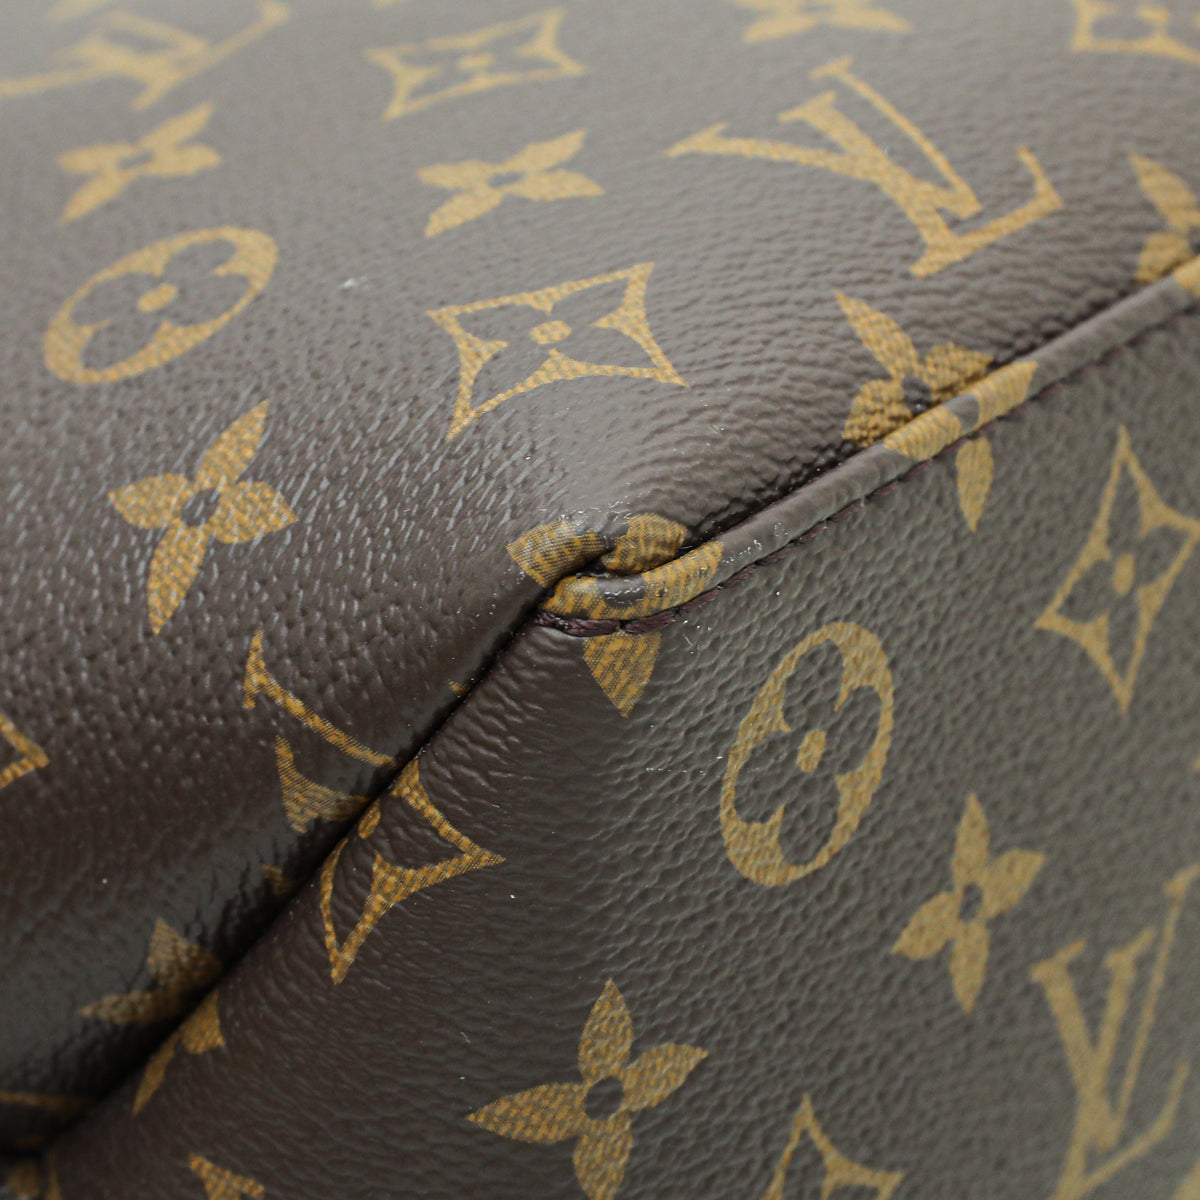 Louis Vuitton Petit Palais Tote Bag (Cash Alternative £1000